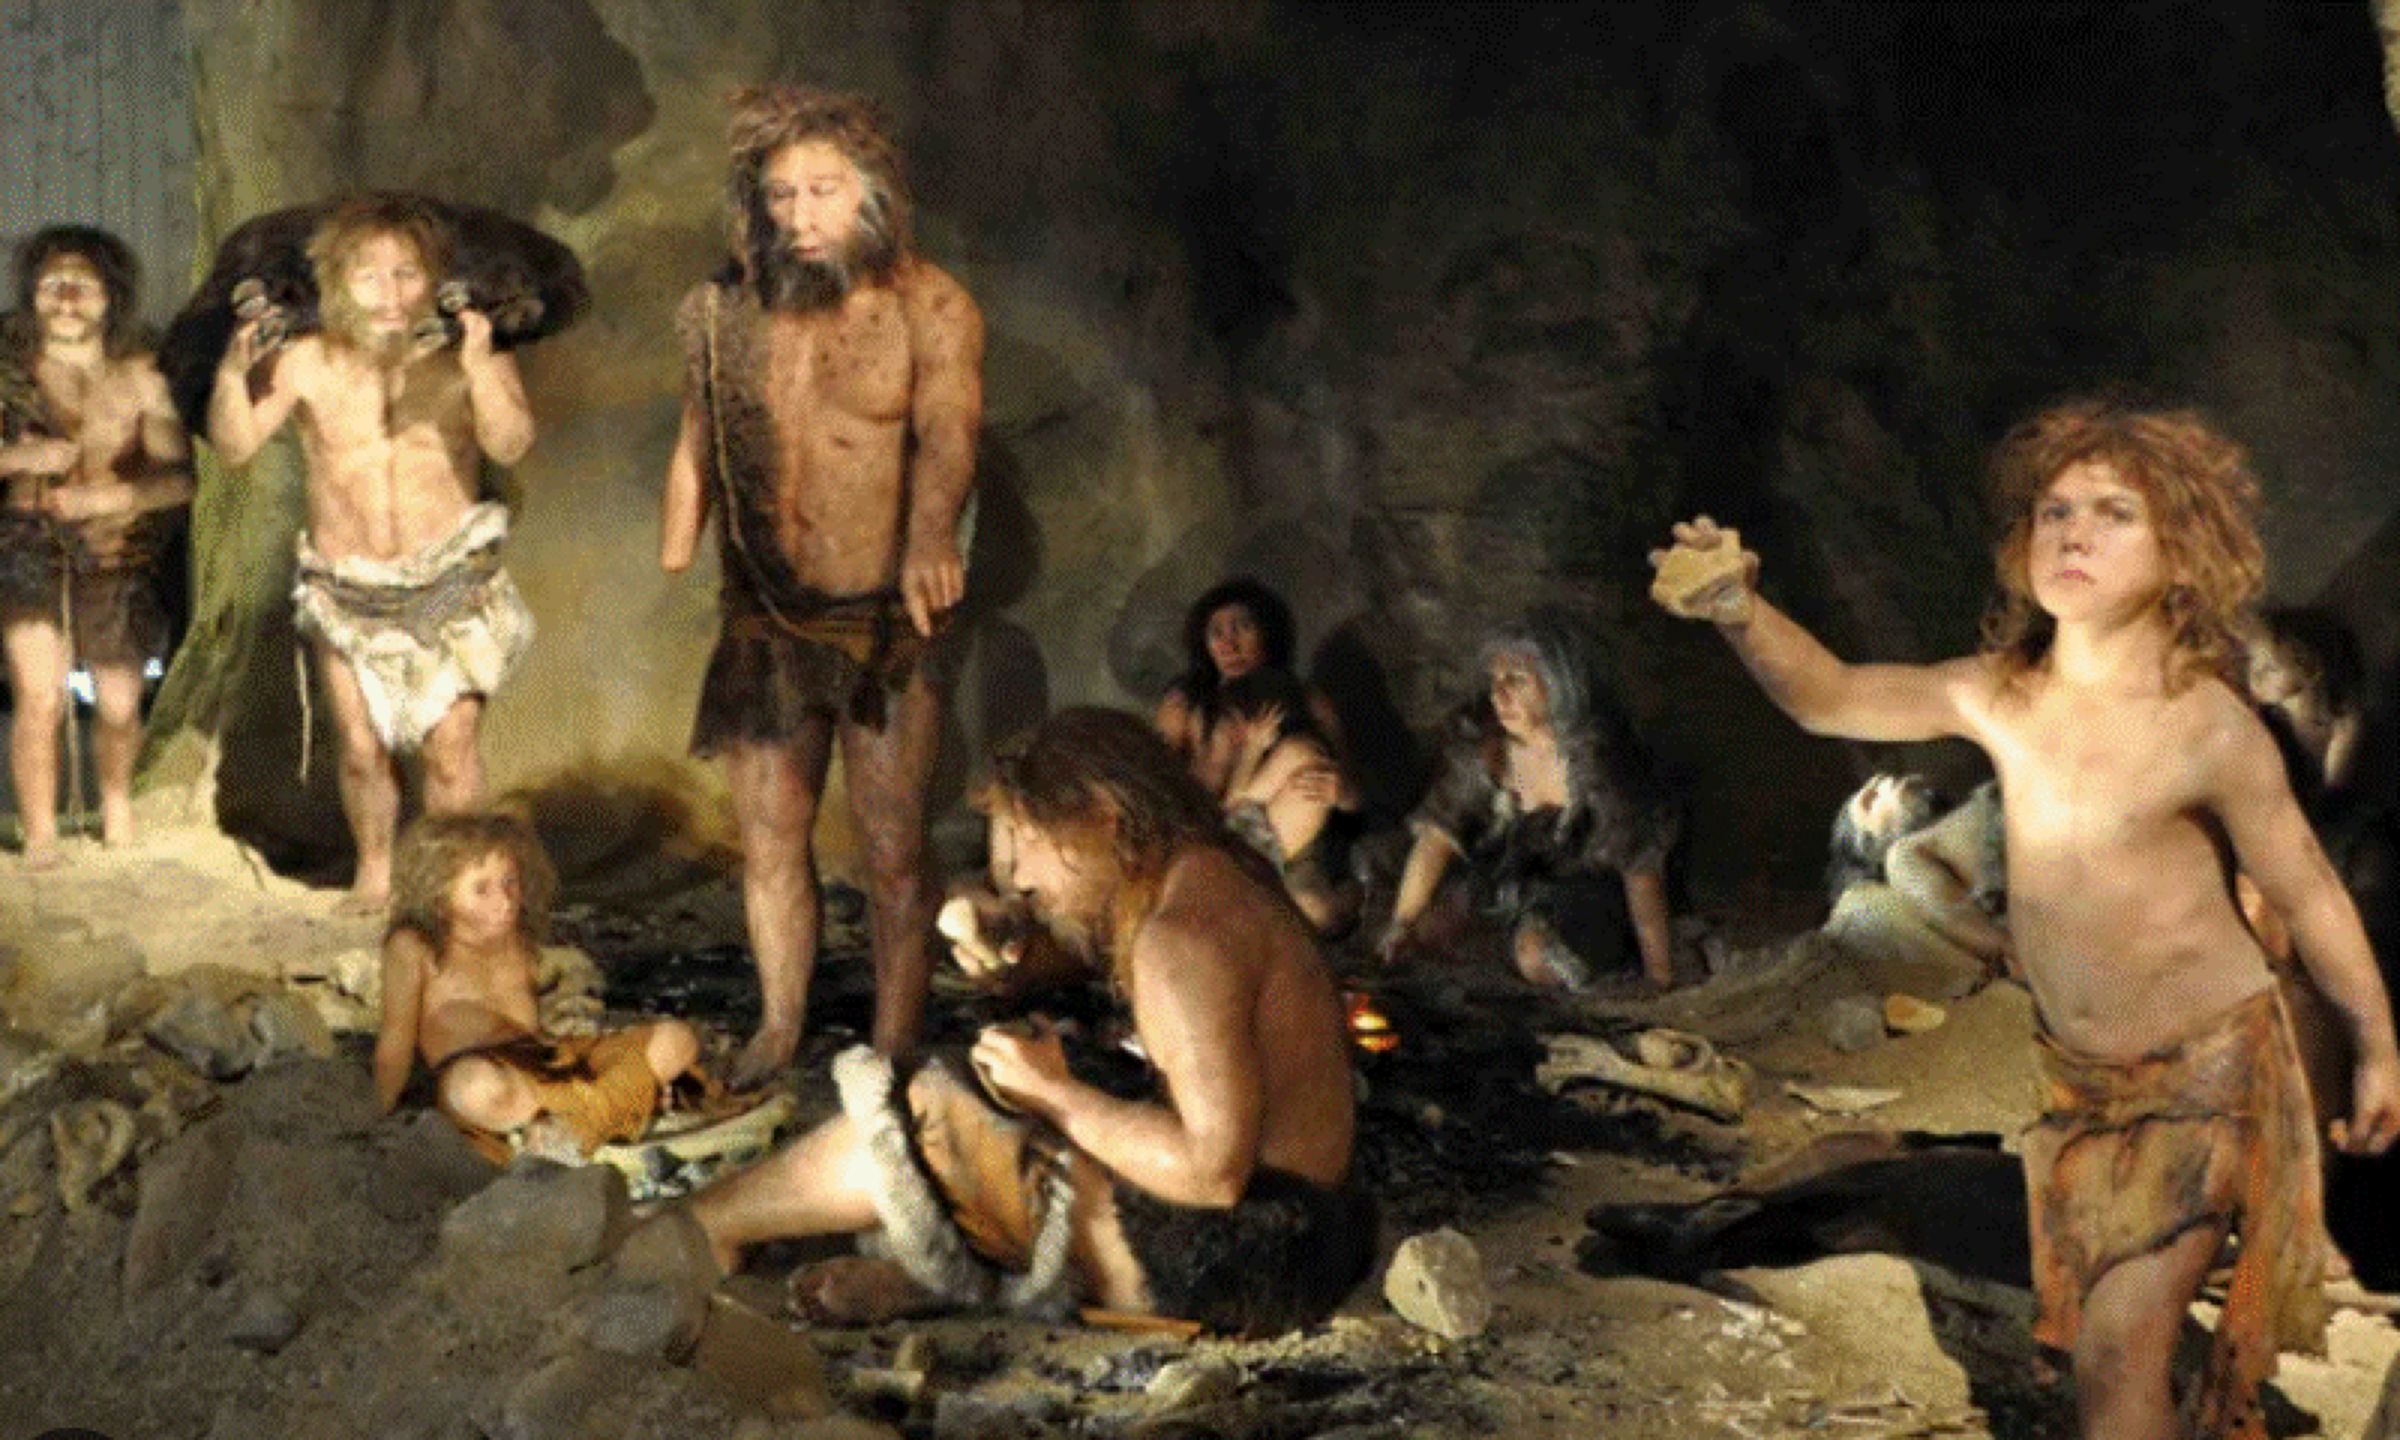 Cât de frumoase erau femeile Neanderthal – Prima față reconstruită e a unei doamne care a trăit acum 75.000 de ani